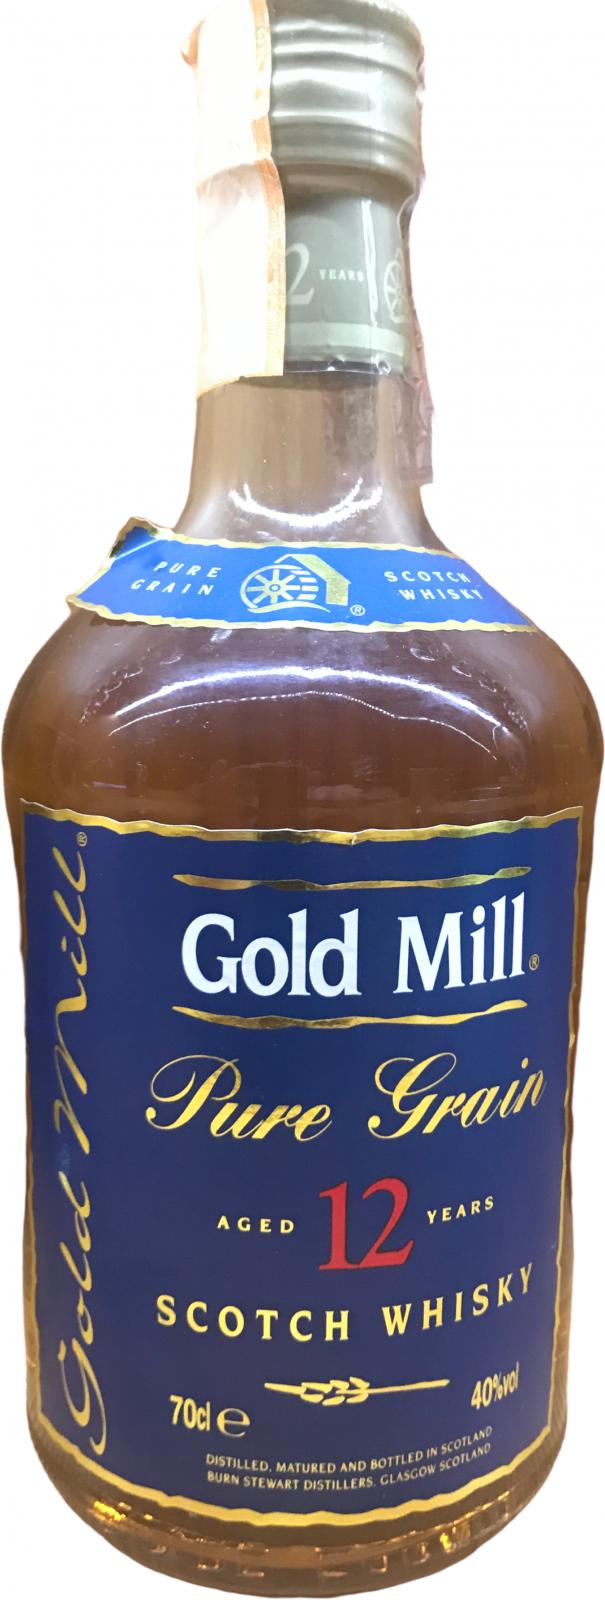 Gold Mill 12yo Pure Grain 40% 700ml